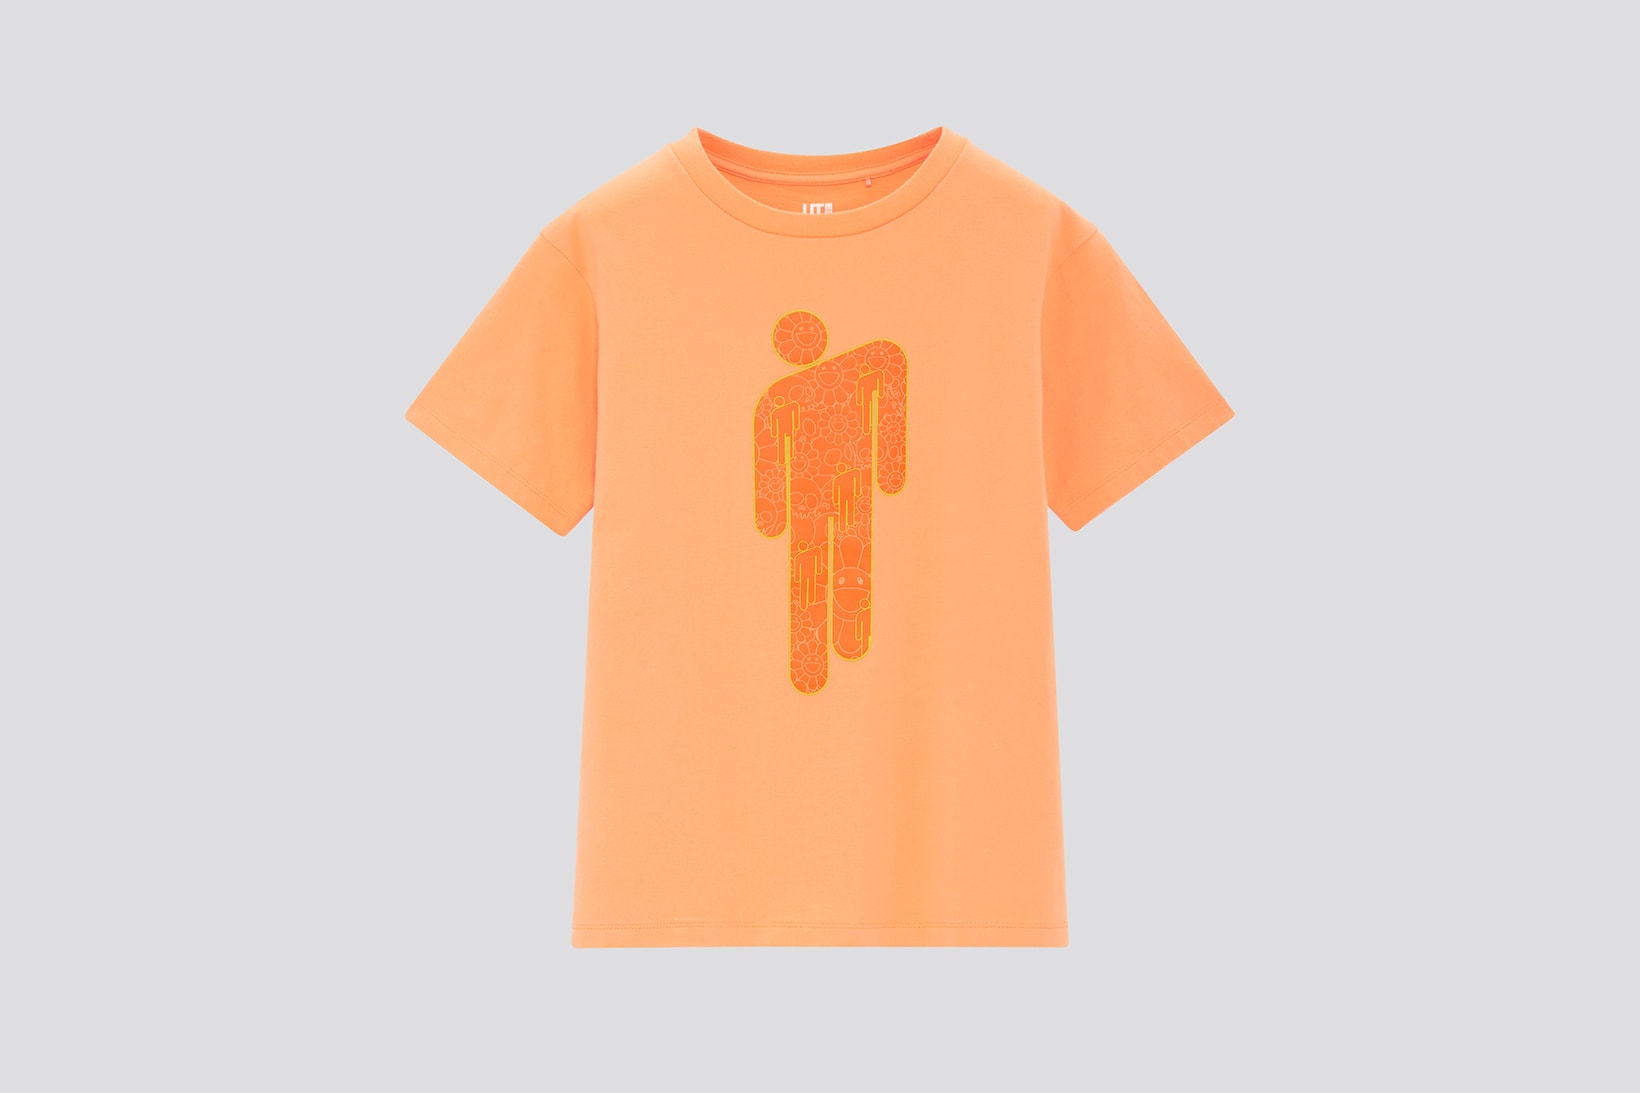 uniqlo ut billie eilish takashi murakami collaboration graphic t shirts womens mens kids